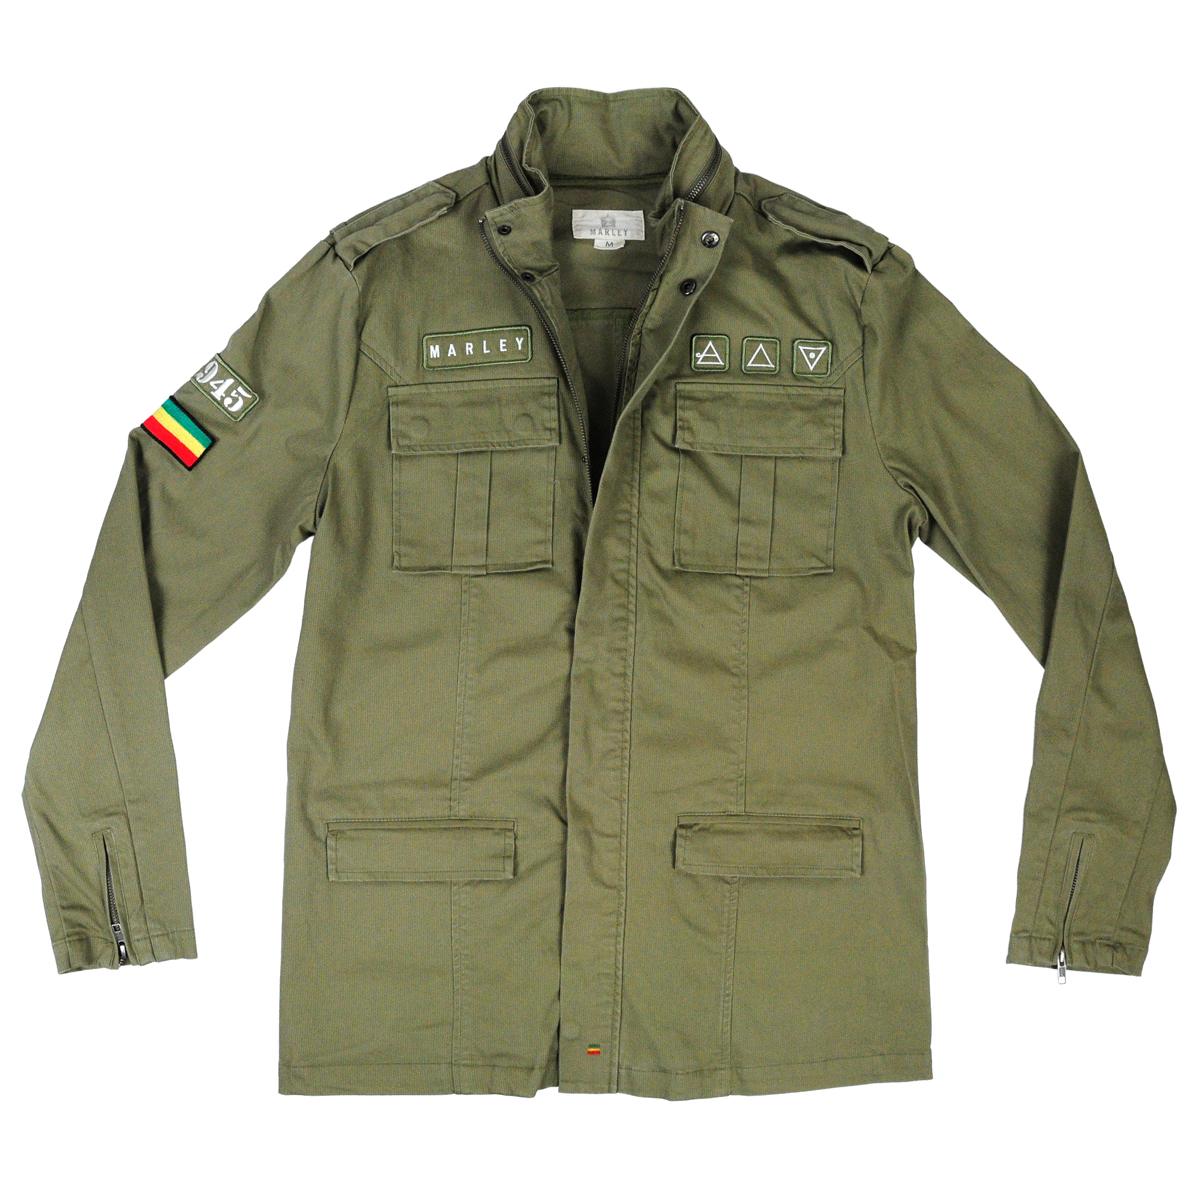 Rasta Military Jacket Military Jacket Upcycled Reworked Jacket 